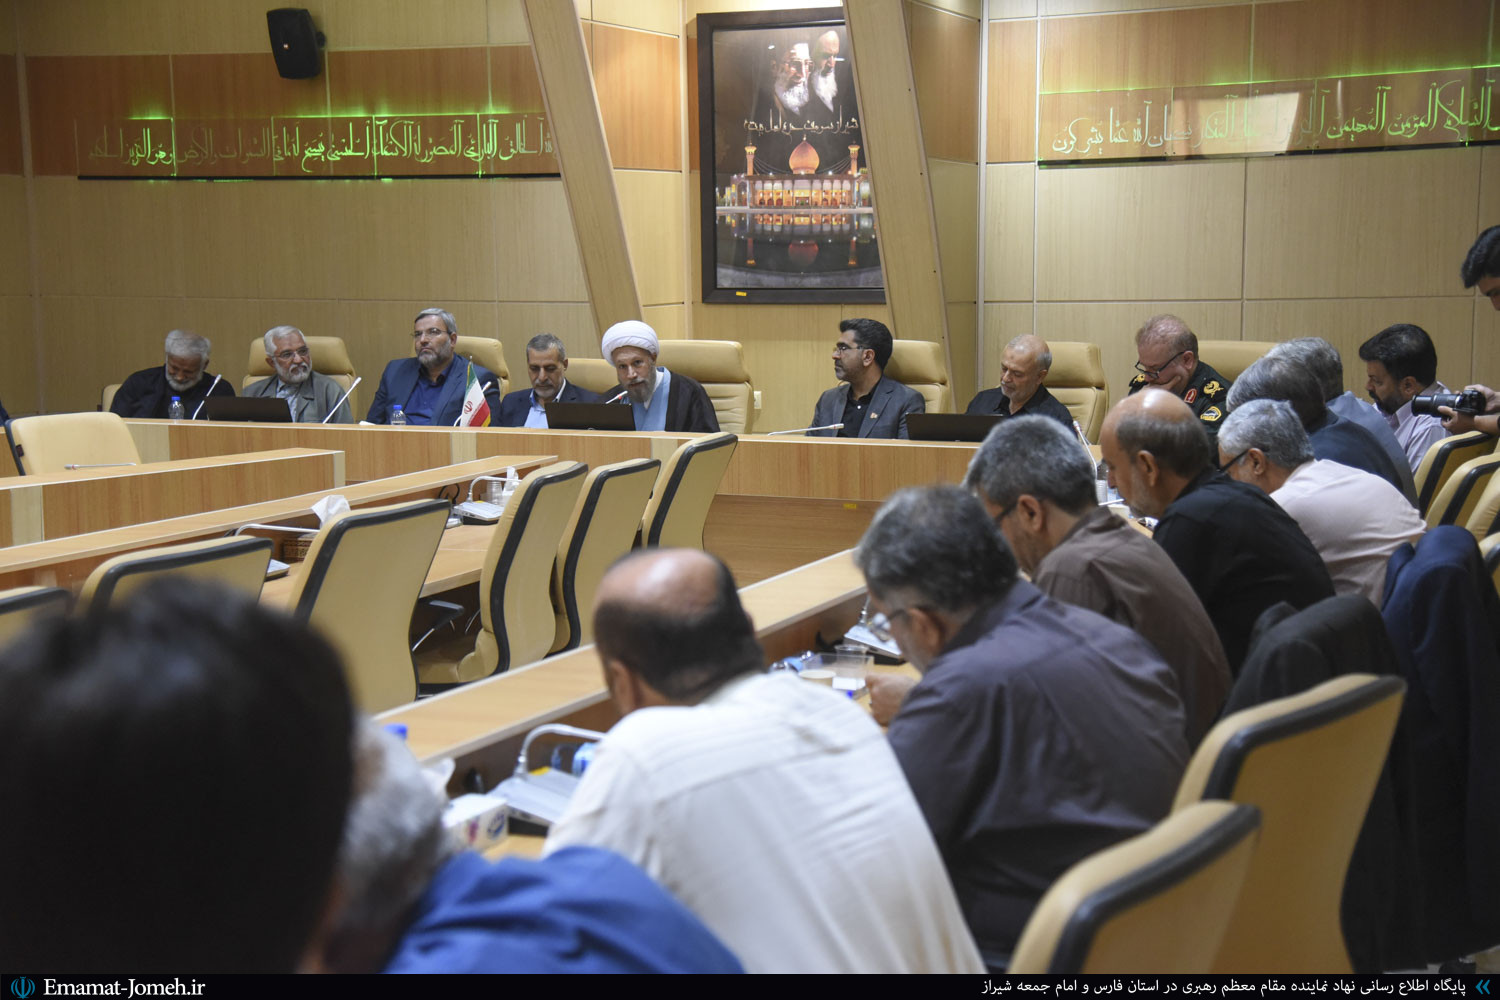 جلسه افتتاح مدرسه عالی حکمرانی شهید بهشتی با حضور آیت الله دژکام